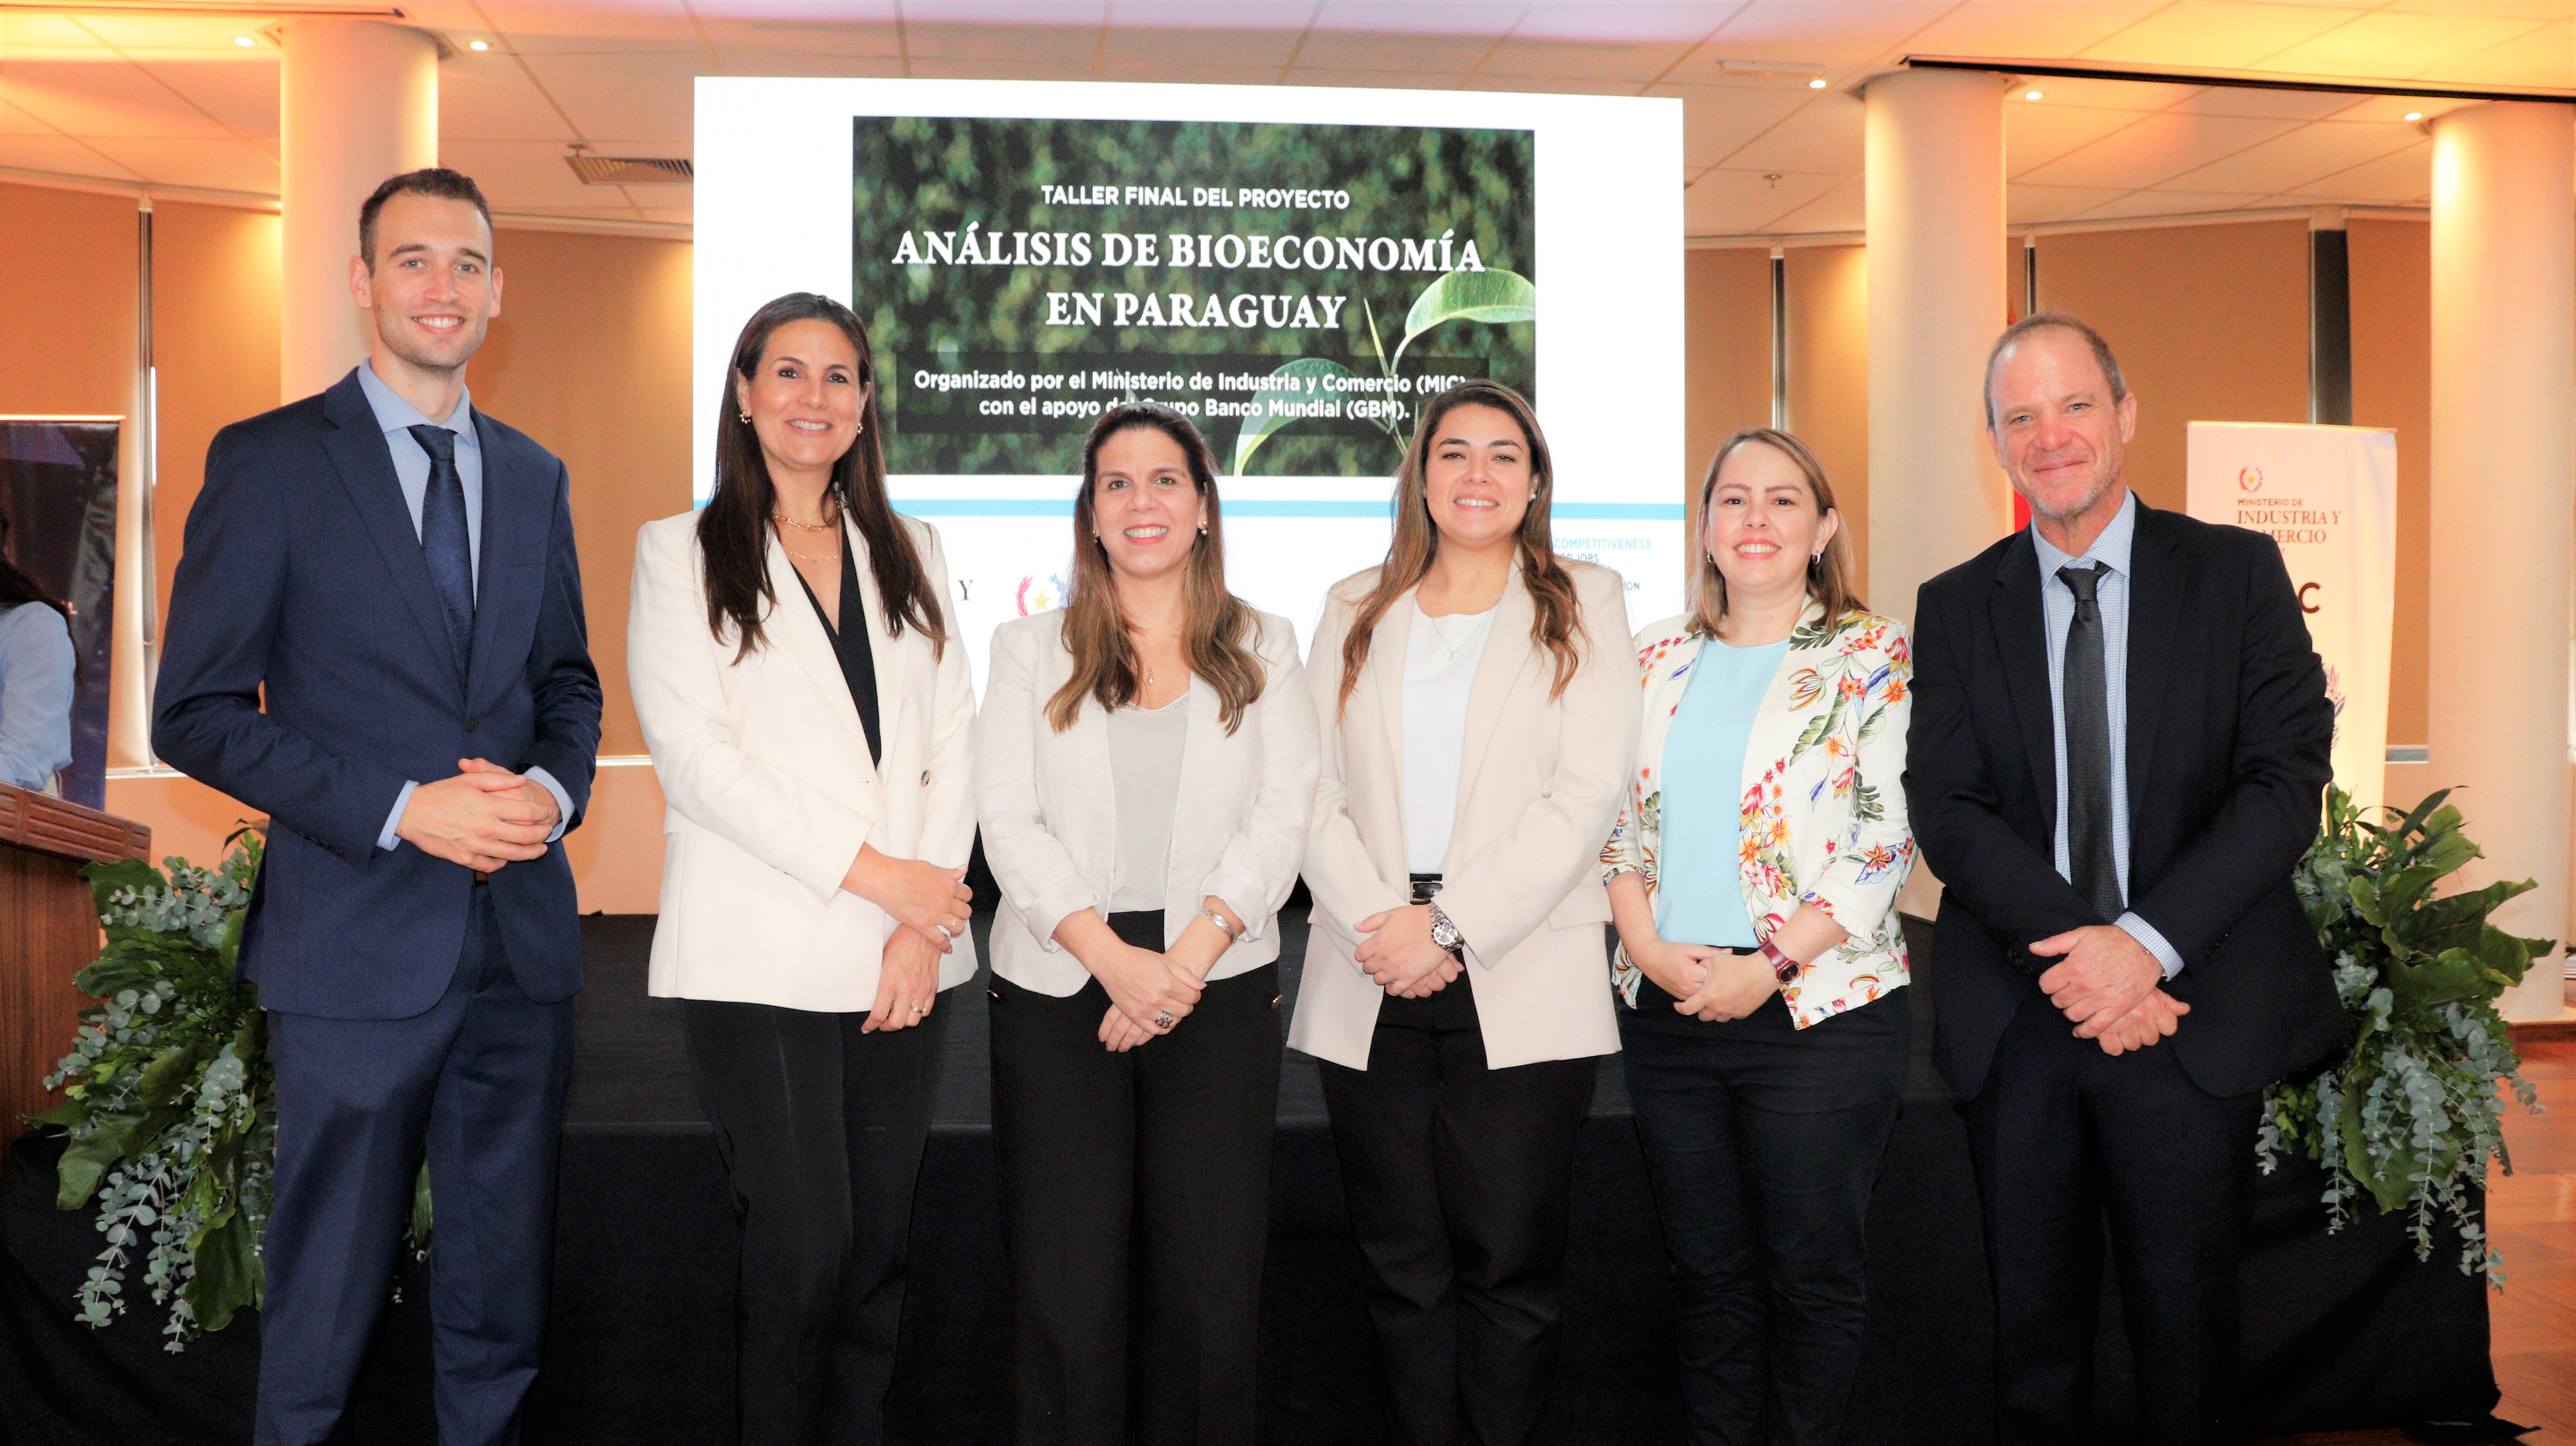 Equipo técnico del Banco Mundial presentó los resultados del análisis de la Bioeconomía en Paraguay